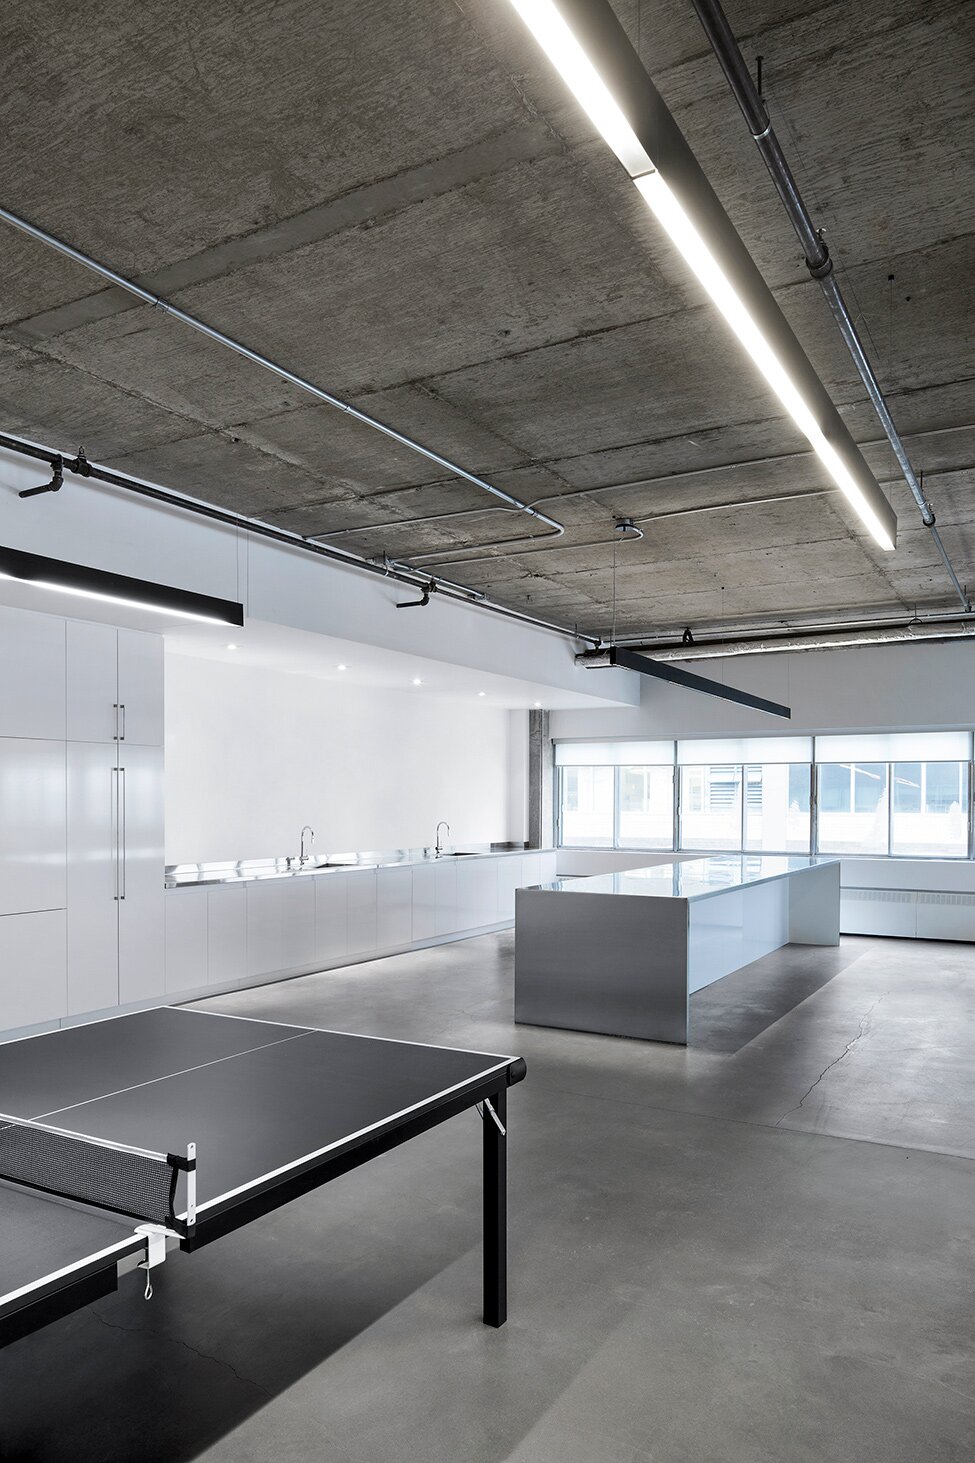 Для оформления интерьера этого офисного помещения был выбран индустриальный стиль, включающий также элементы минимализма